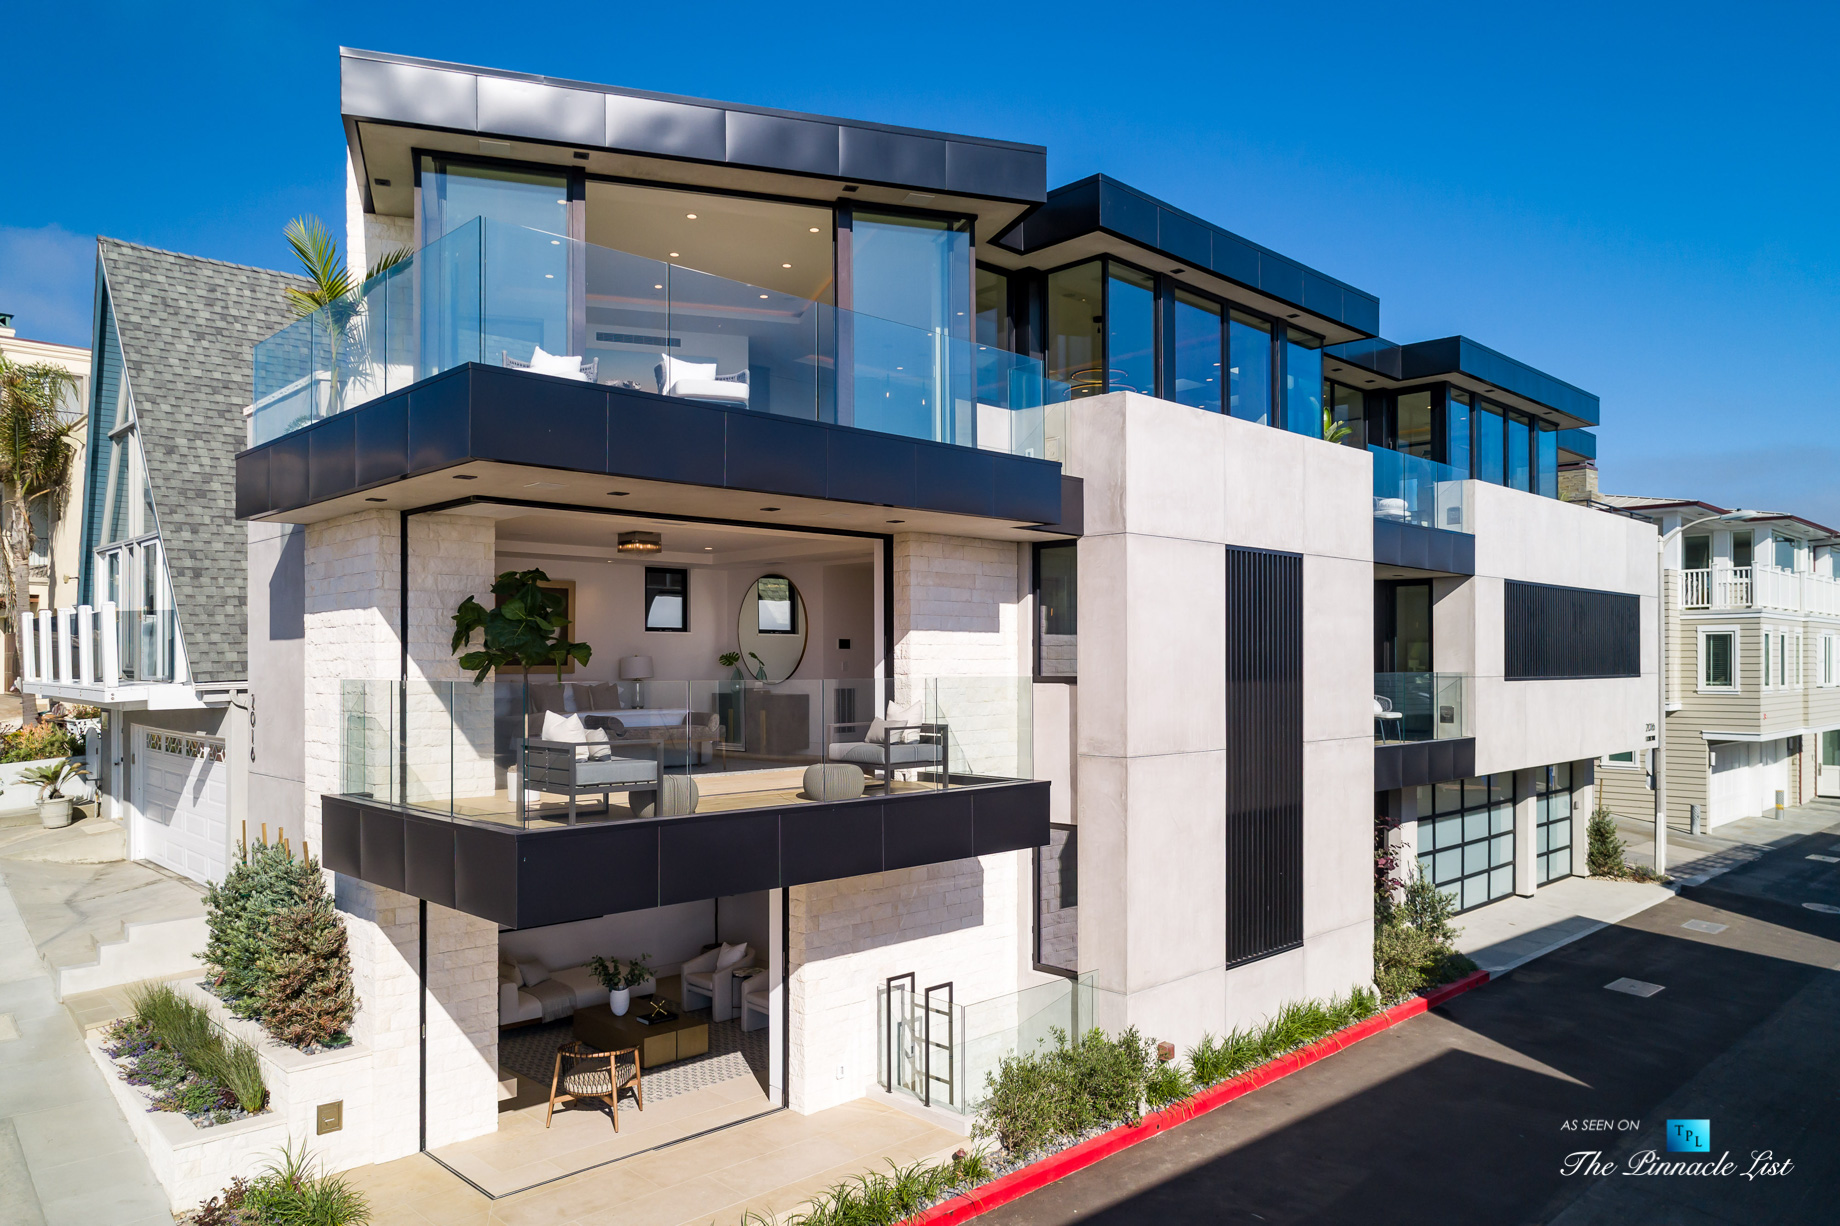 2016 Ocean Dr, Manhattan Beach, CA, USA – Luxury Real Estate – Modern Ocean View Home